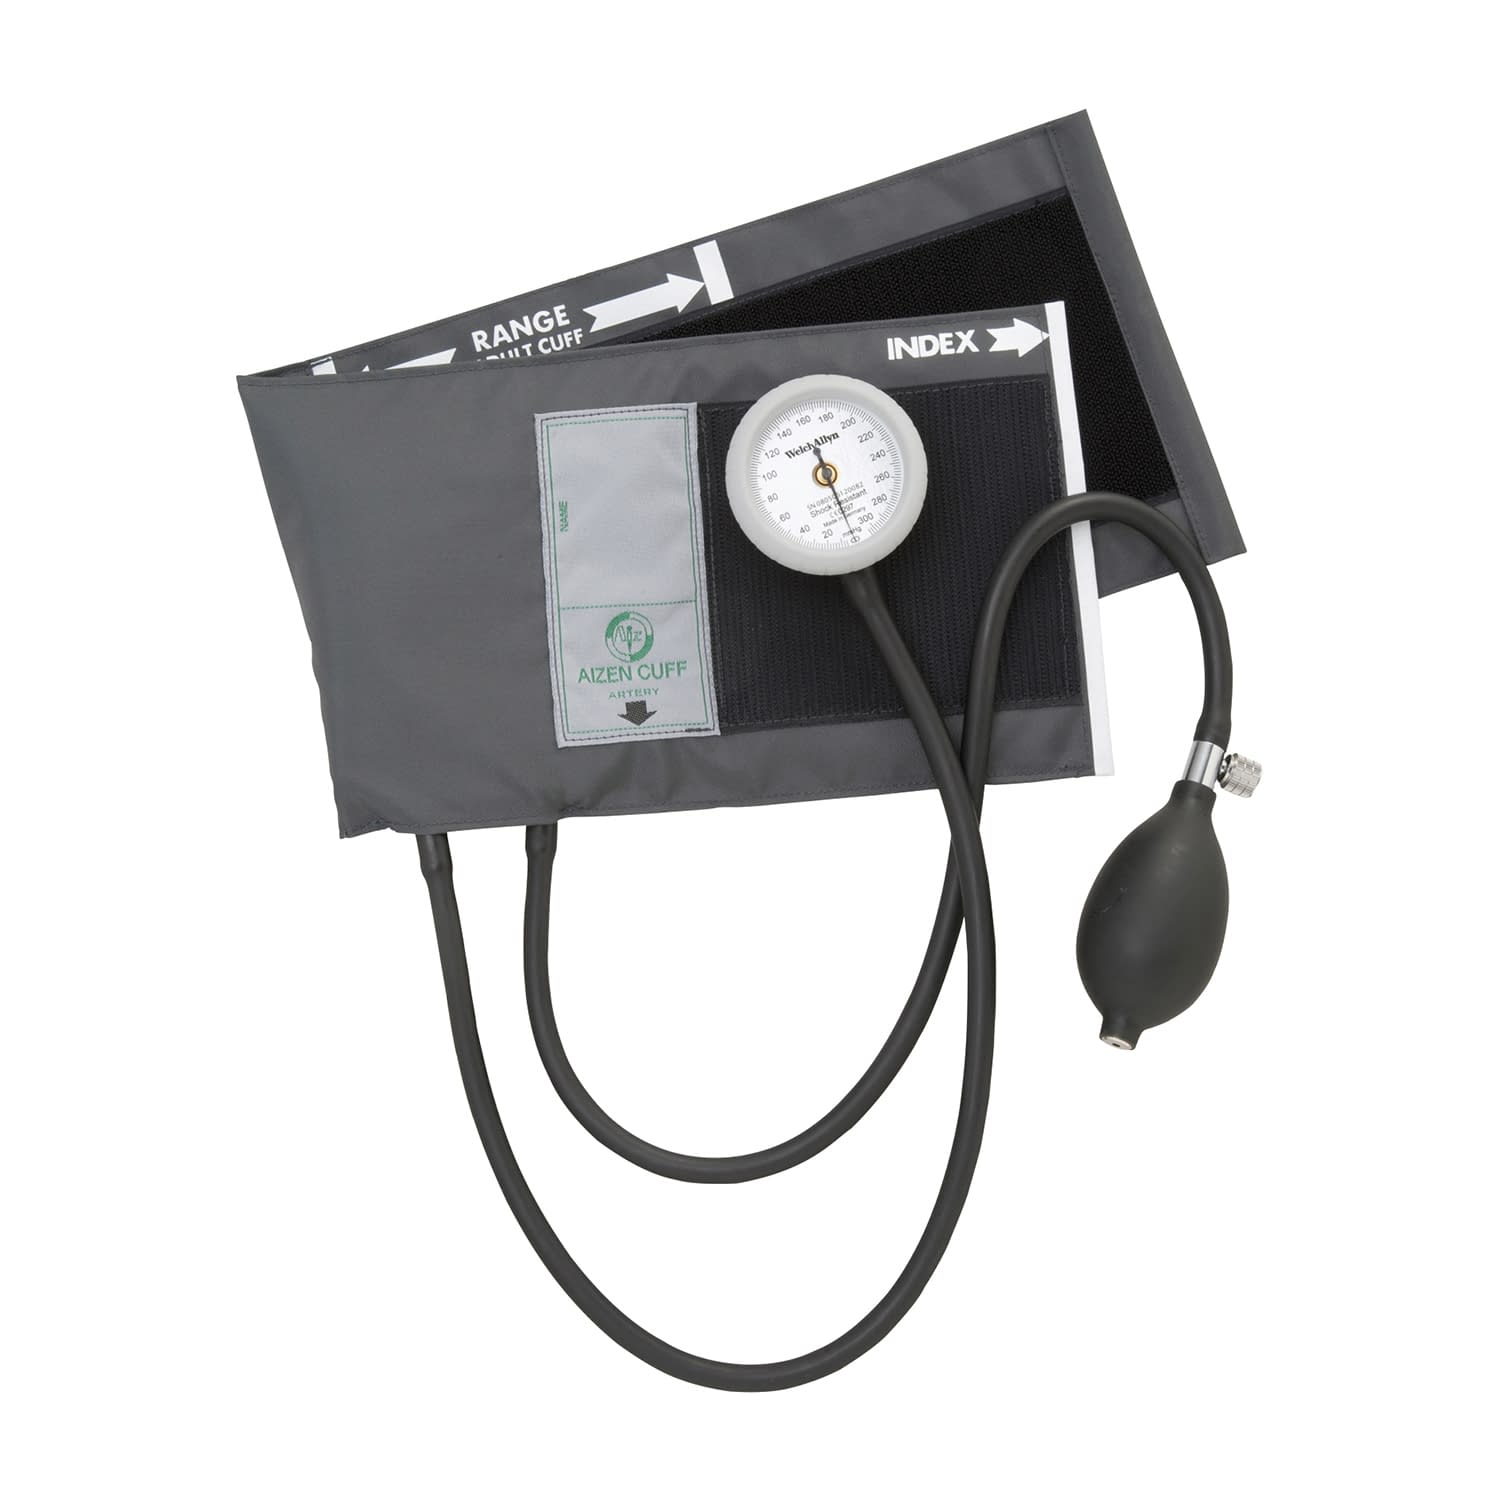 (02-5790-01)ギヤフリーアネロイド血圧計 GF700-01(ｸﾞﾚｰ) ｷﾞﾔﾌﾘｰｱﾈﾛｲﾄﾞｹﾂｱﾂｹｲ【1組単位】【2019年カタログ商品】